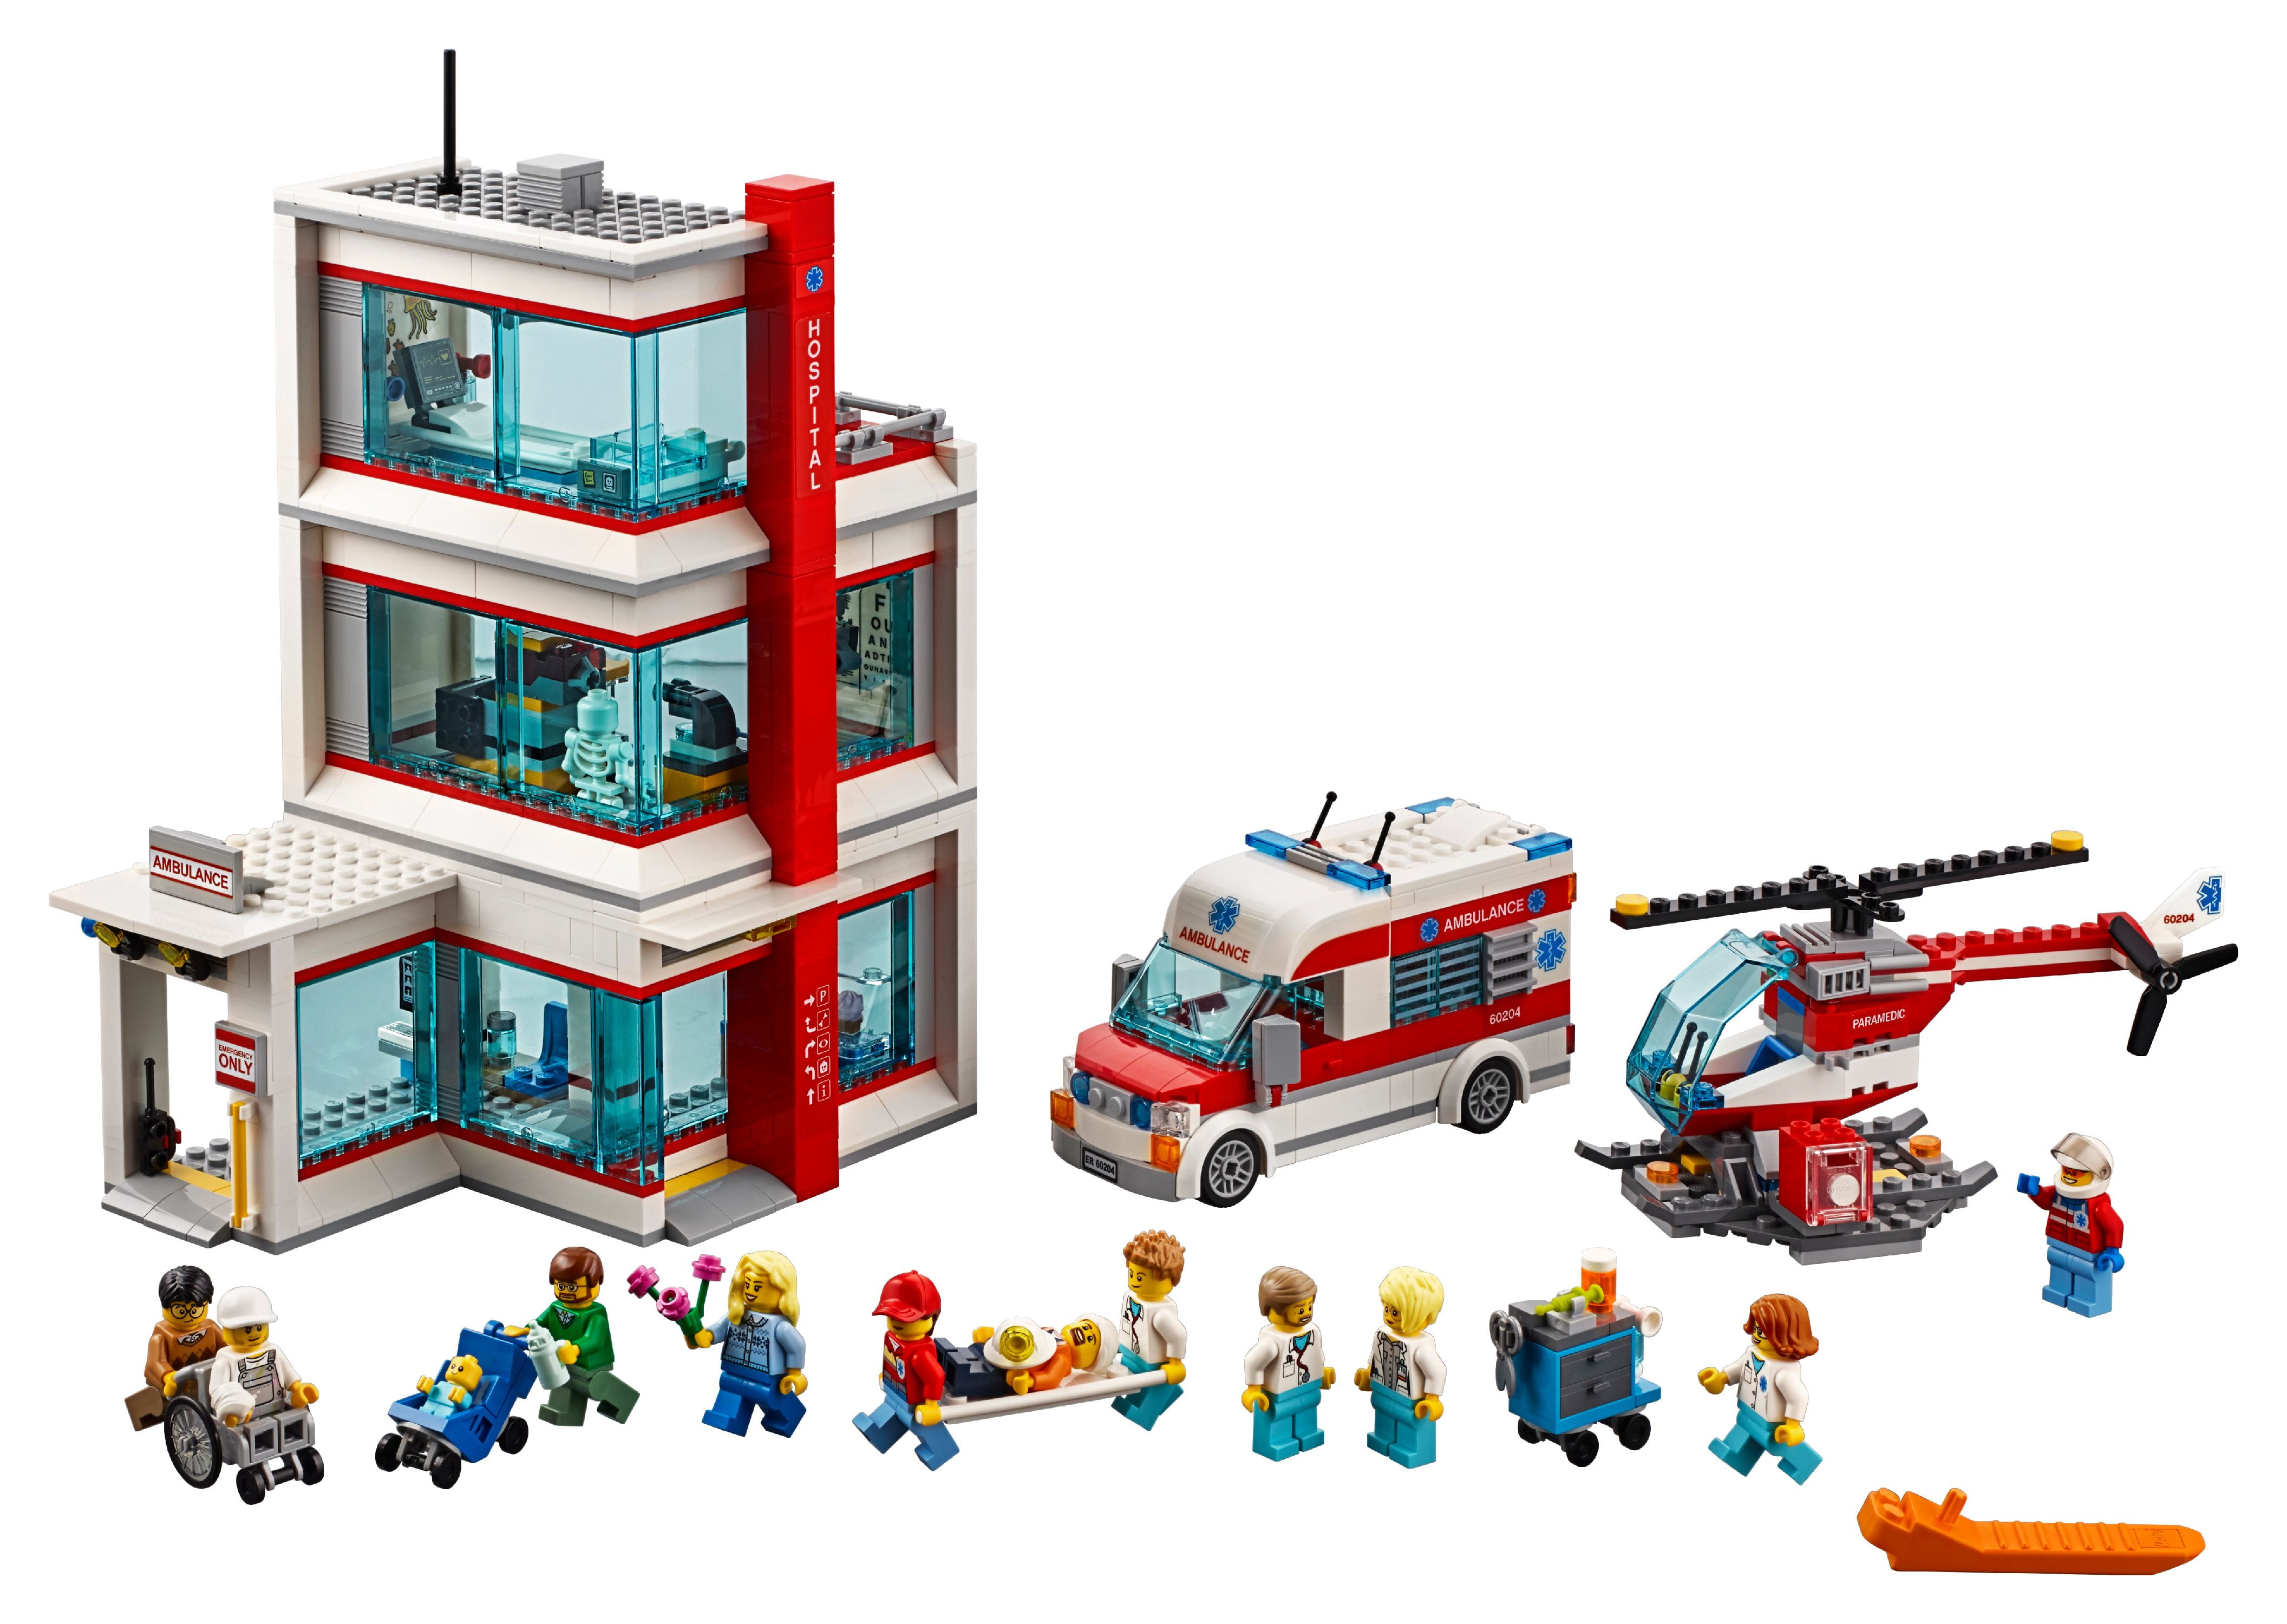 LEGO City LEGO Hospital 60204 Walmart.com